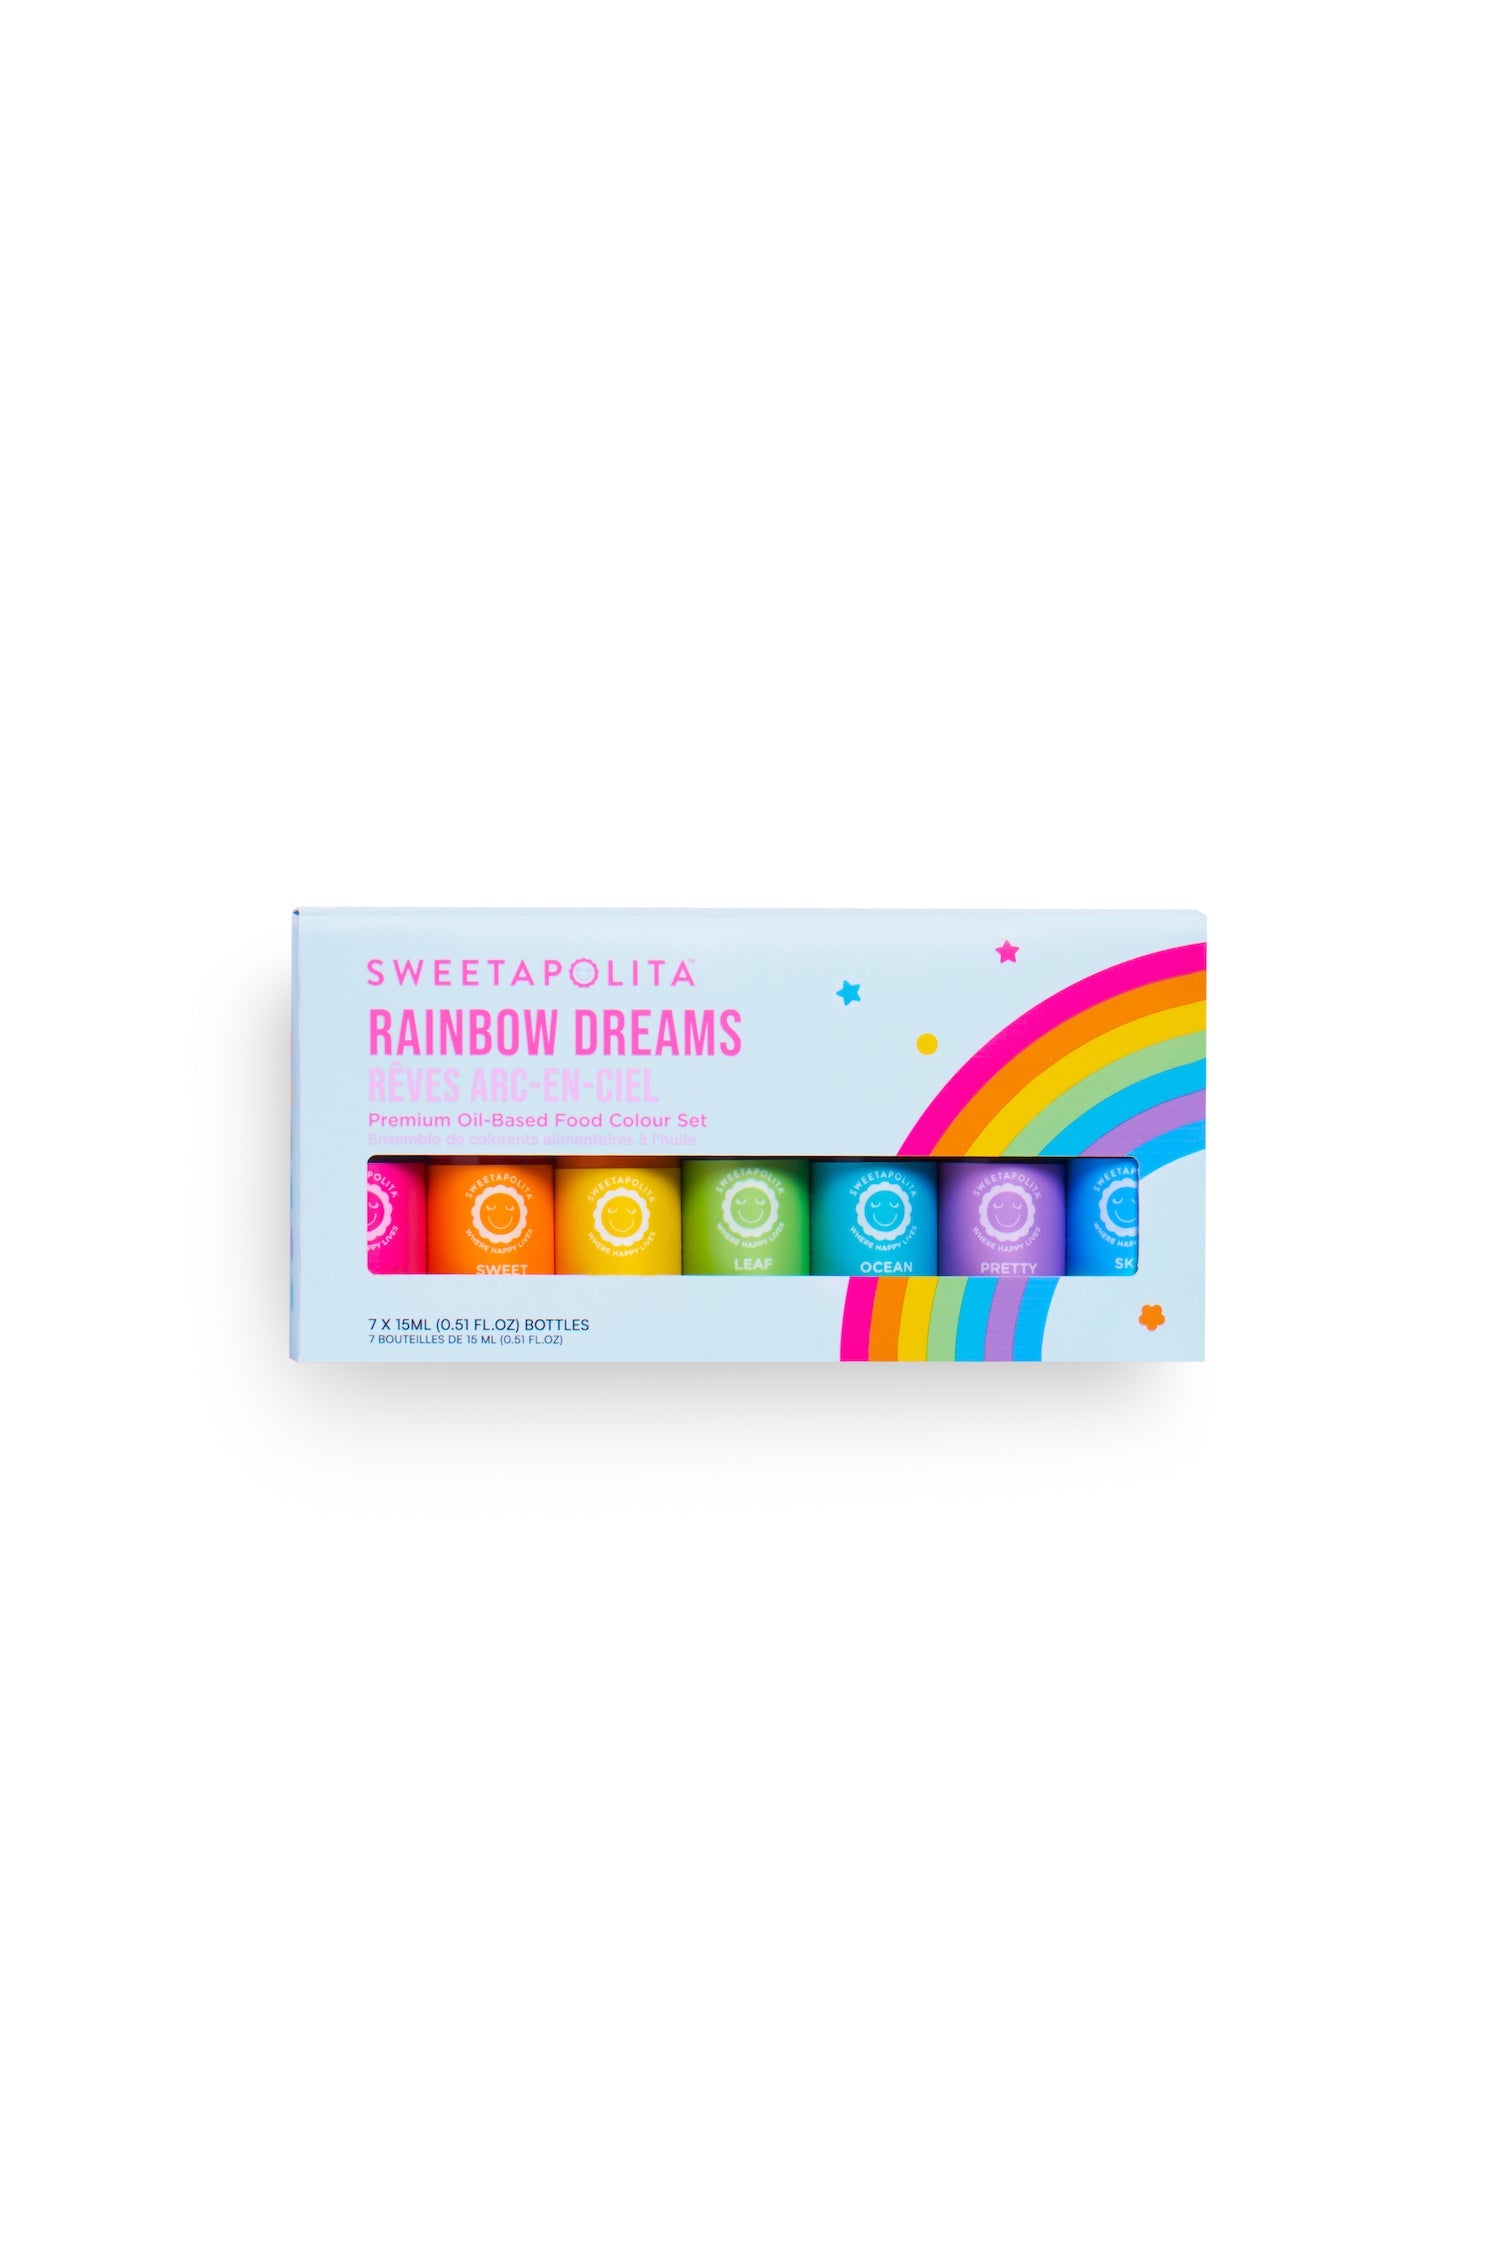 Rainbow Dreams Oil Based Food Colour Set - US